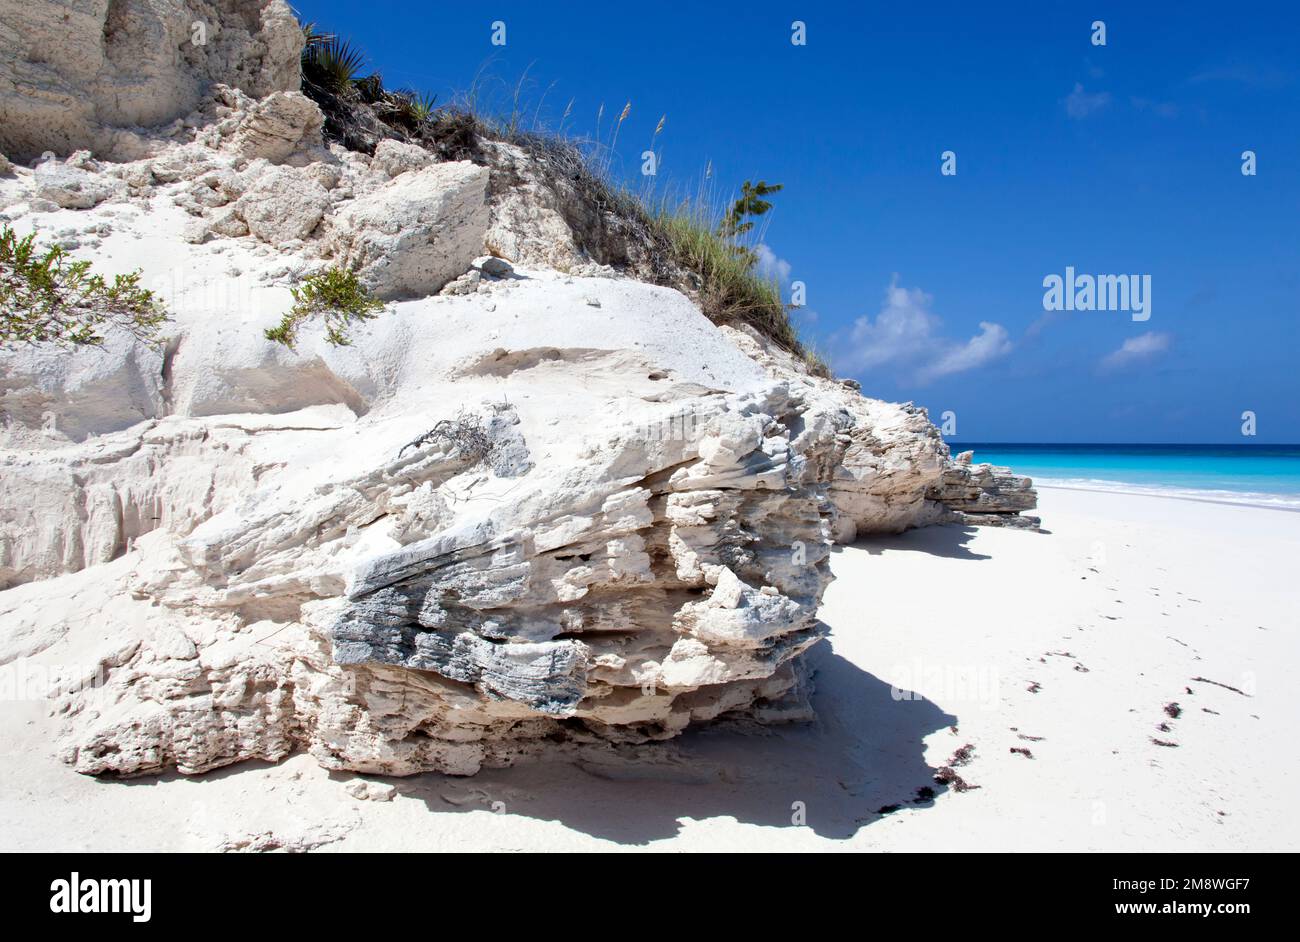 Der malerische Blick auf einen erodierten Felsen und einen Sandstrand auf der unbewohnten Insel Half Moon Cay (Bahamas) Stockfoto